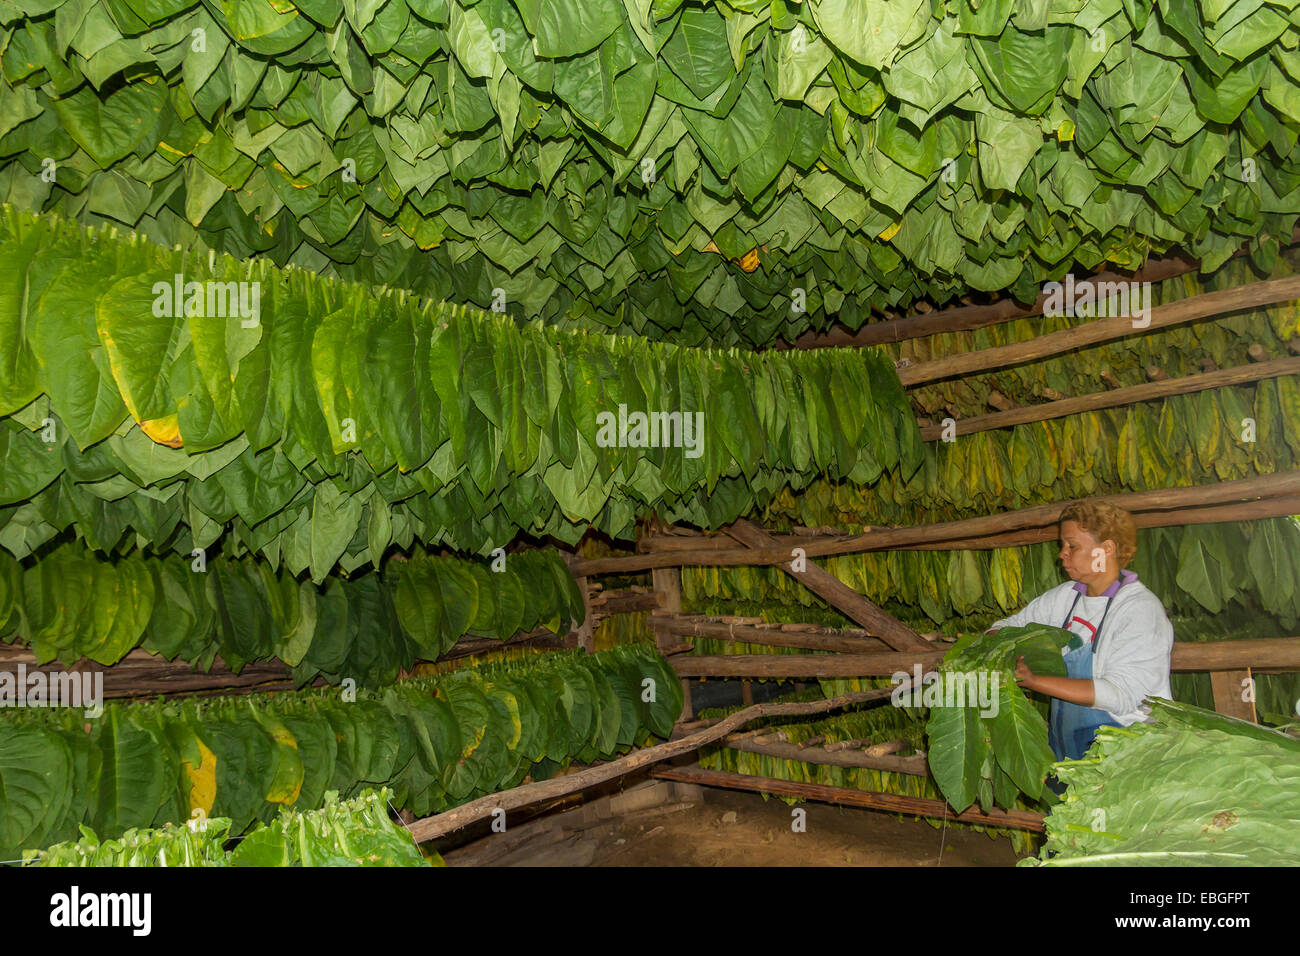 Cuba, Pinar del Rio, Tobacco shed Stock Photo